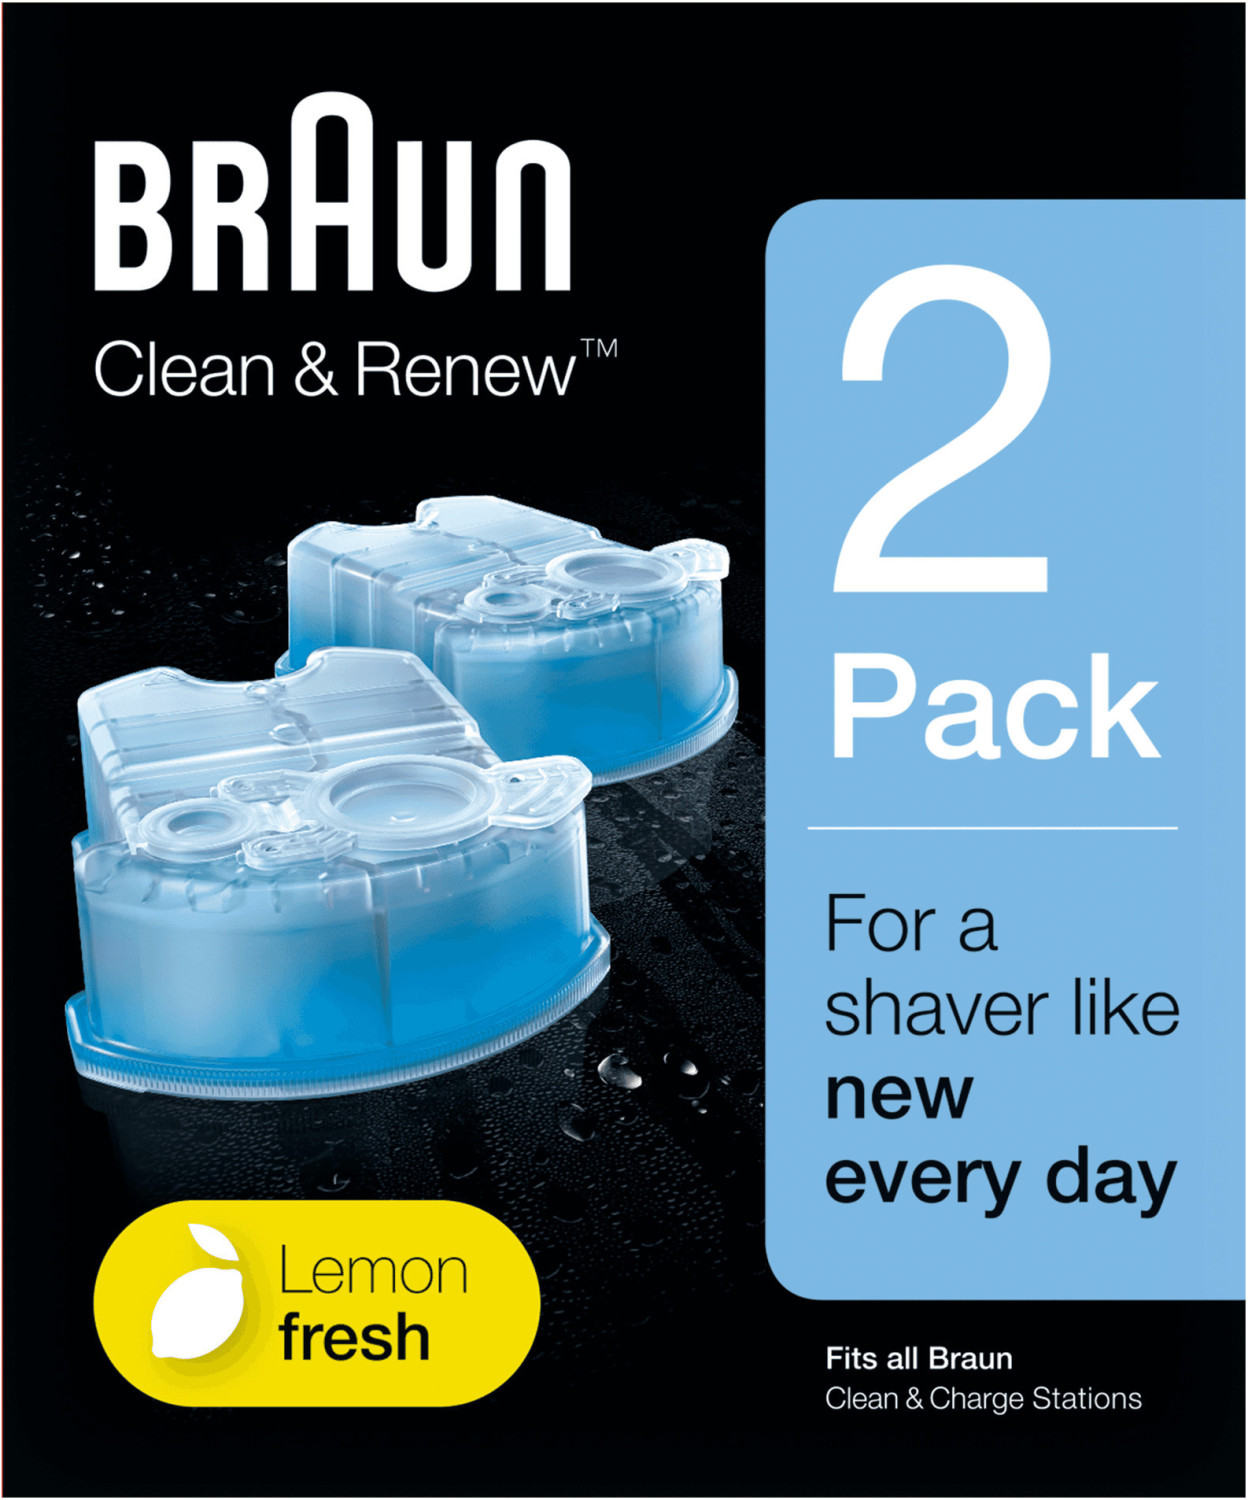 3x Braun Reinigungskartusche CCR 2 Clean & Renew Lemonfresh Serie